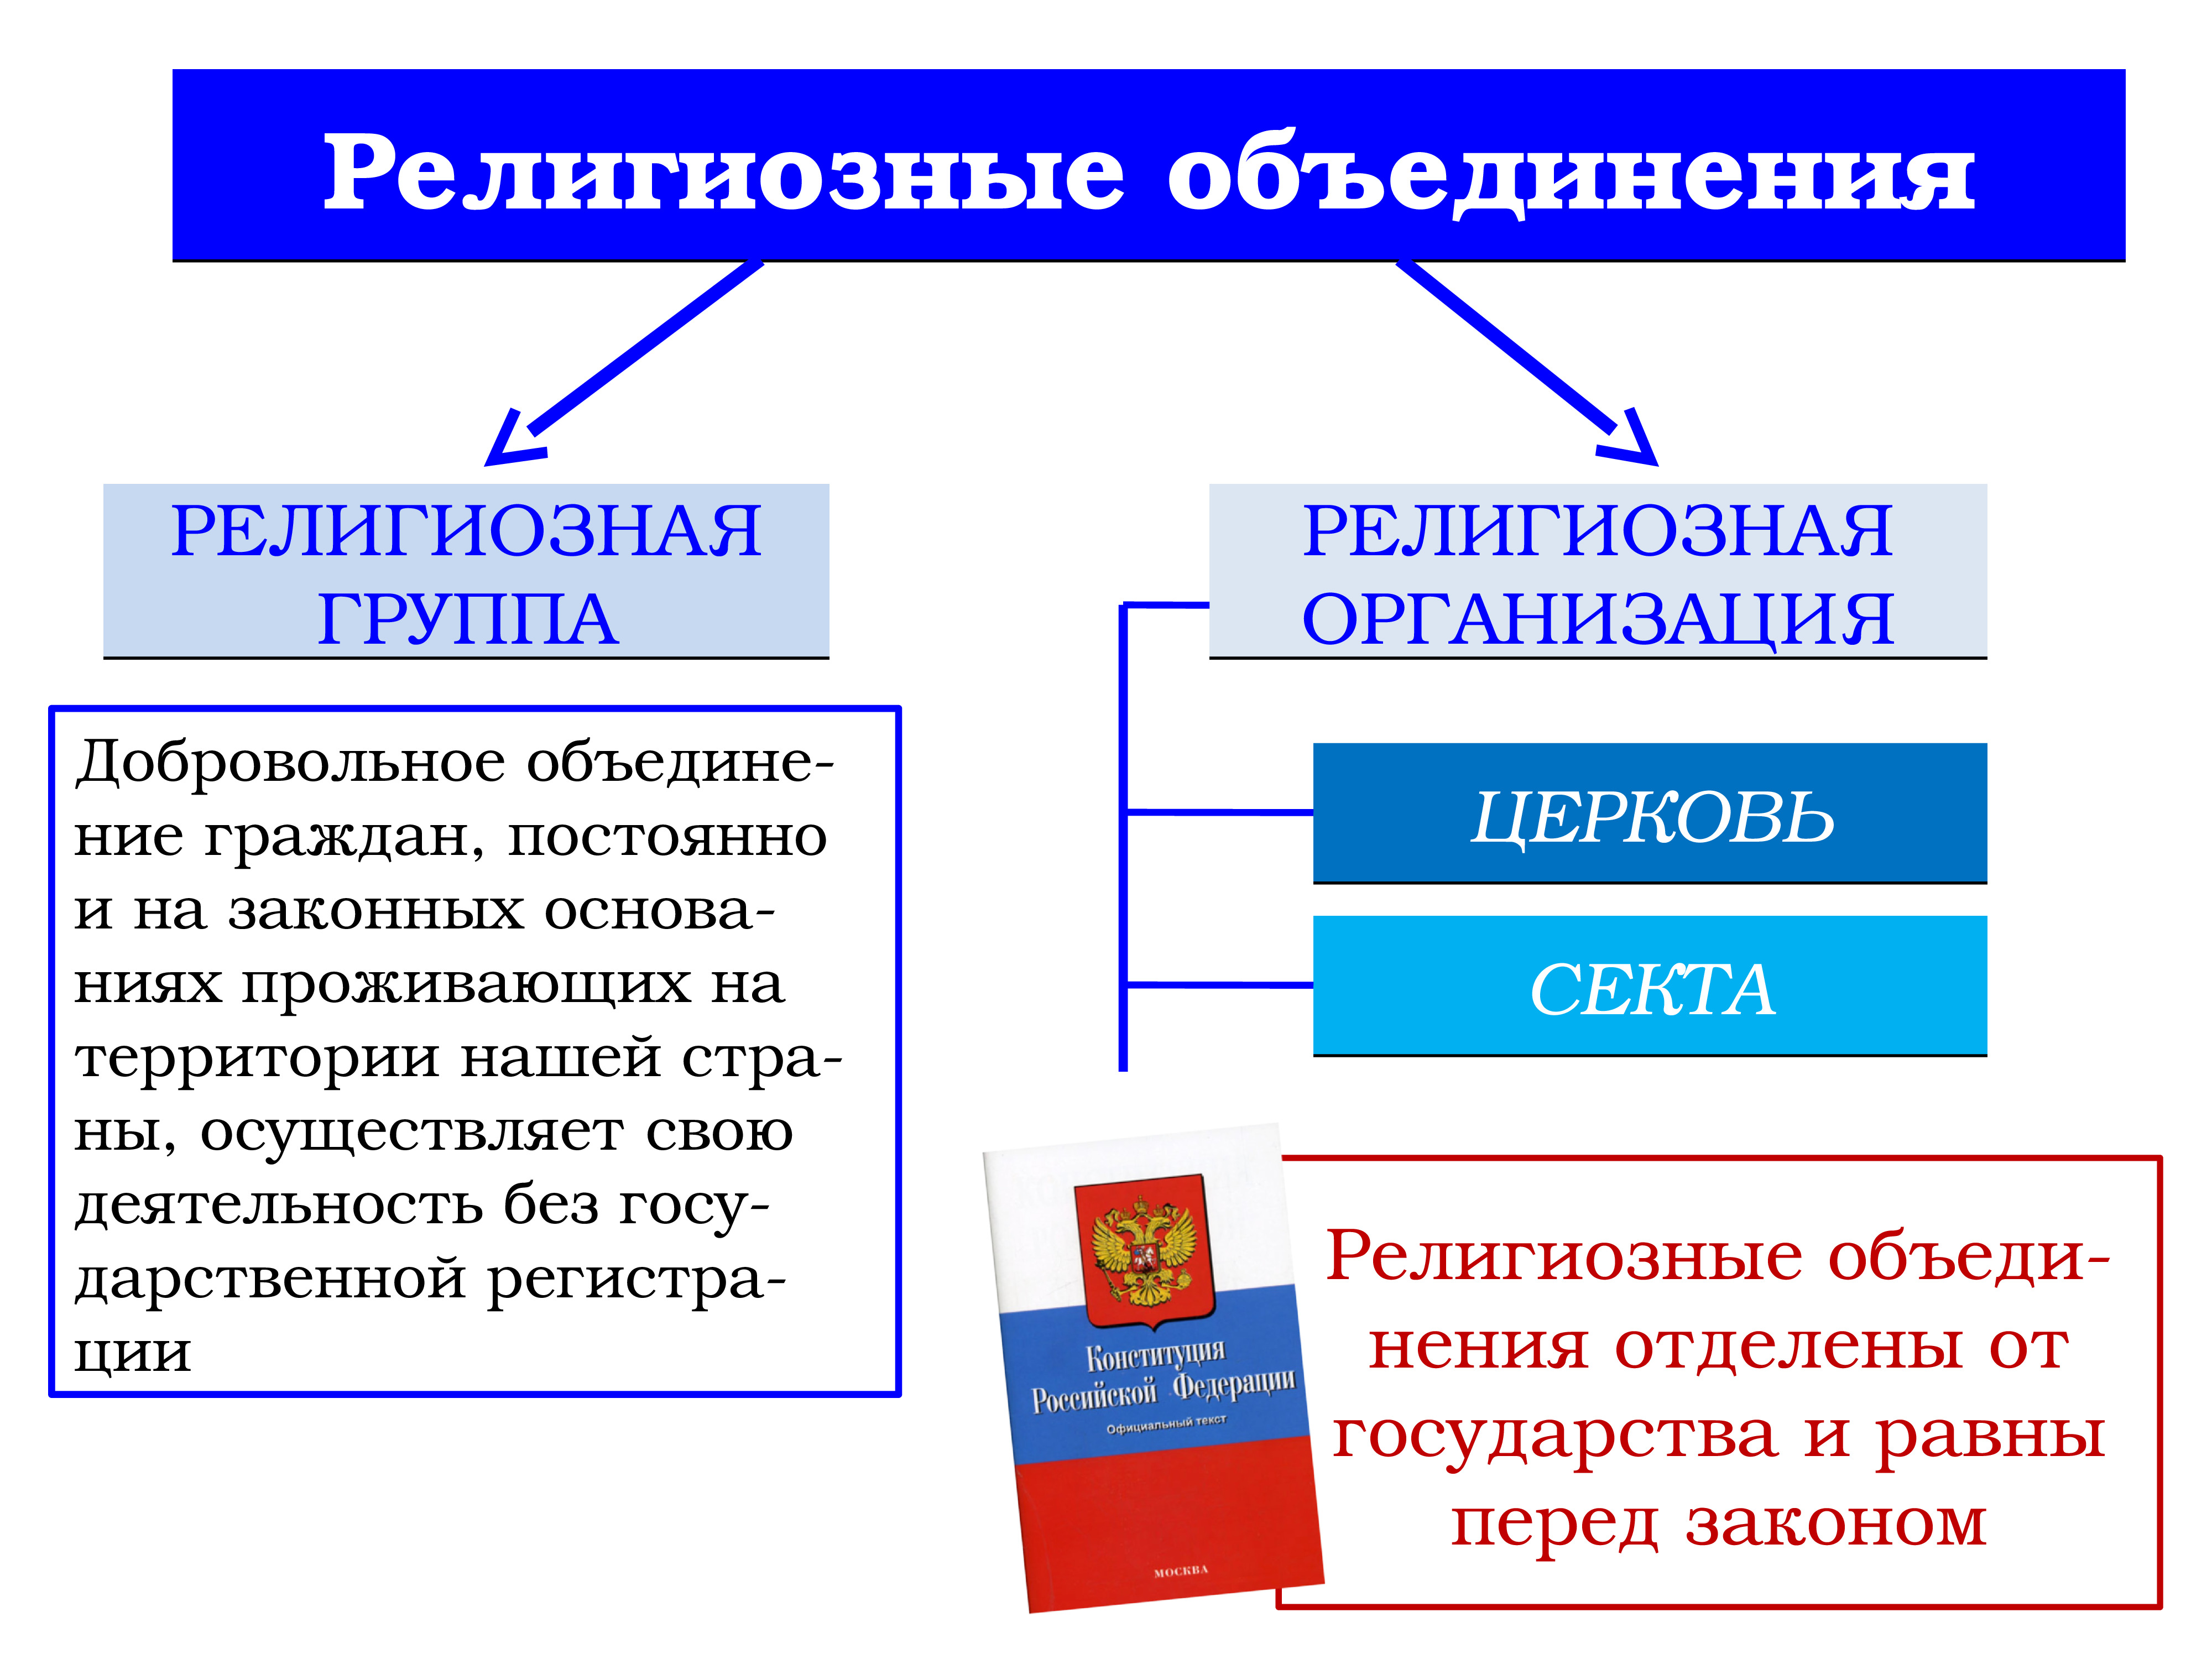 Когда была организована россия. Религиозные объединения и организации в Российской Федерации. Религиозные объединения РФ типы.